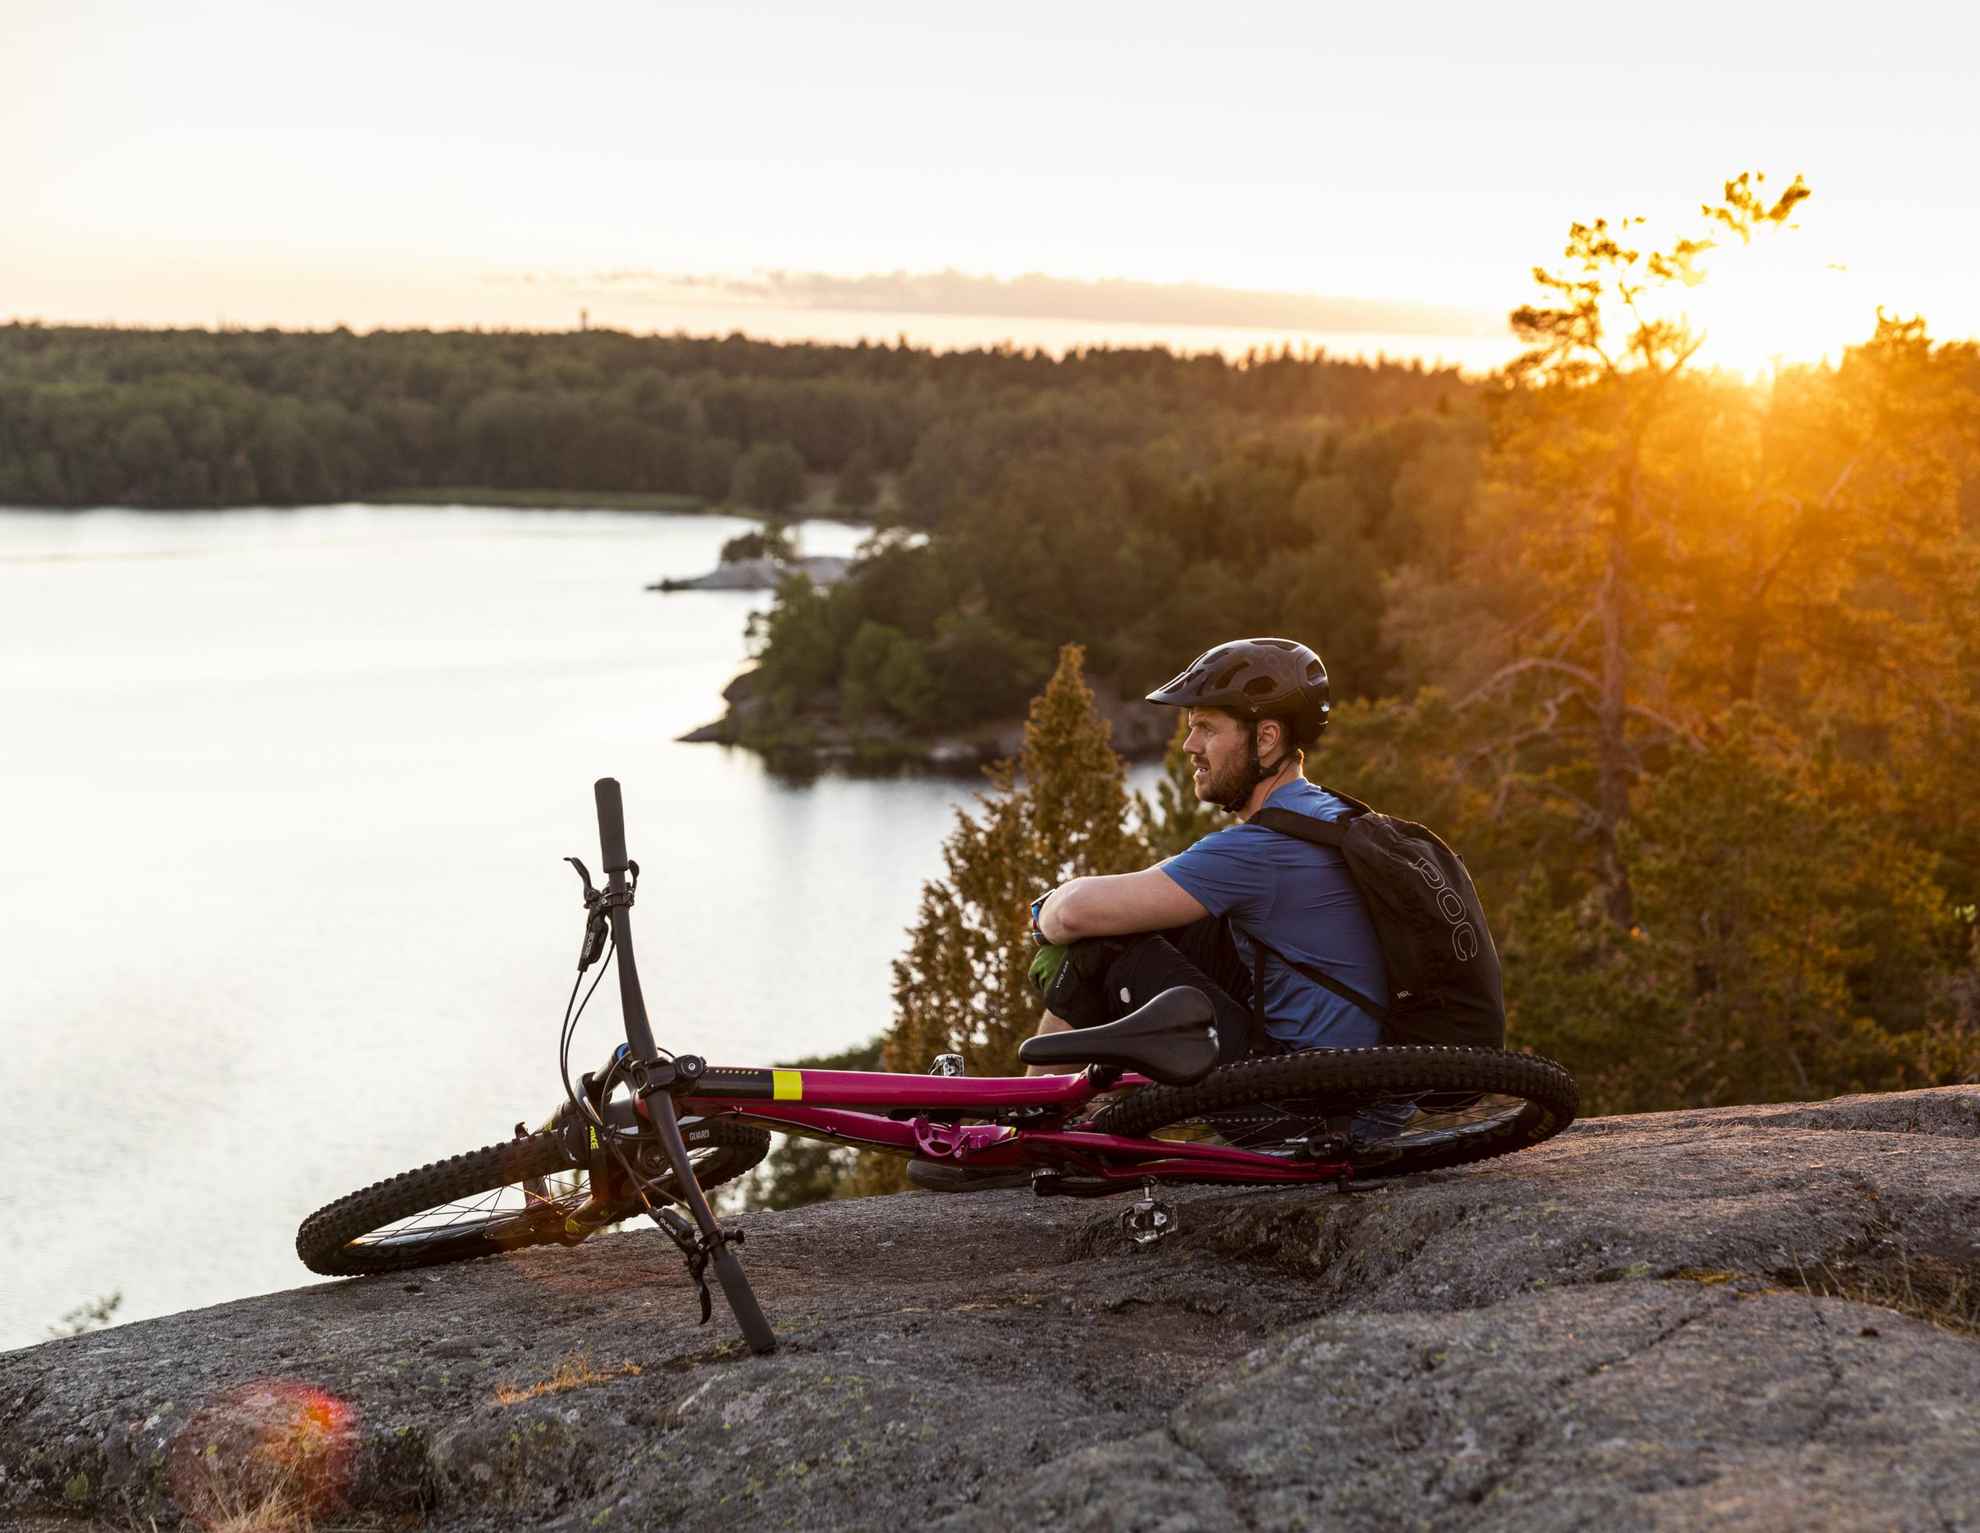 Un homme regarde la vue sur l'eau, assis depuis un rocher avec un vélo à côté de lui.